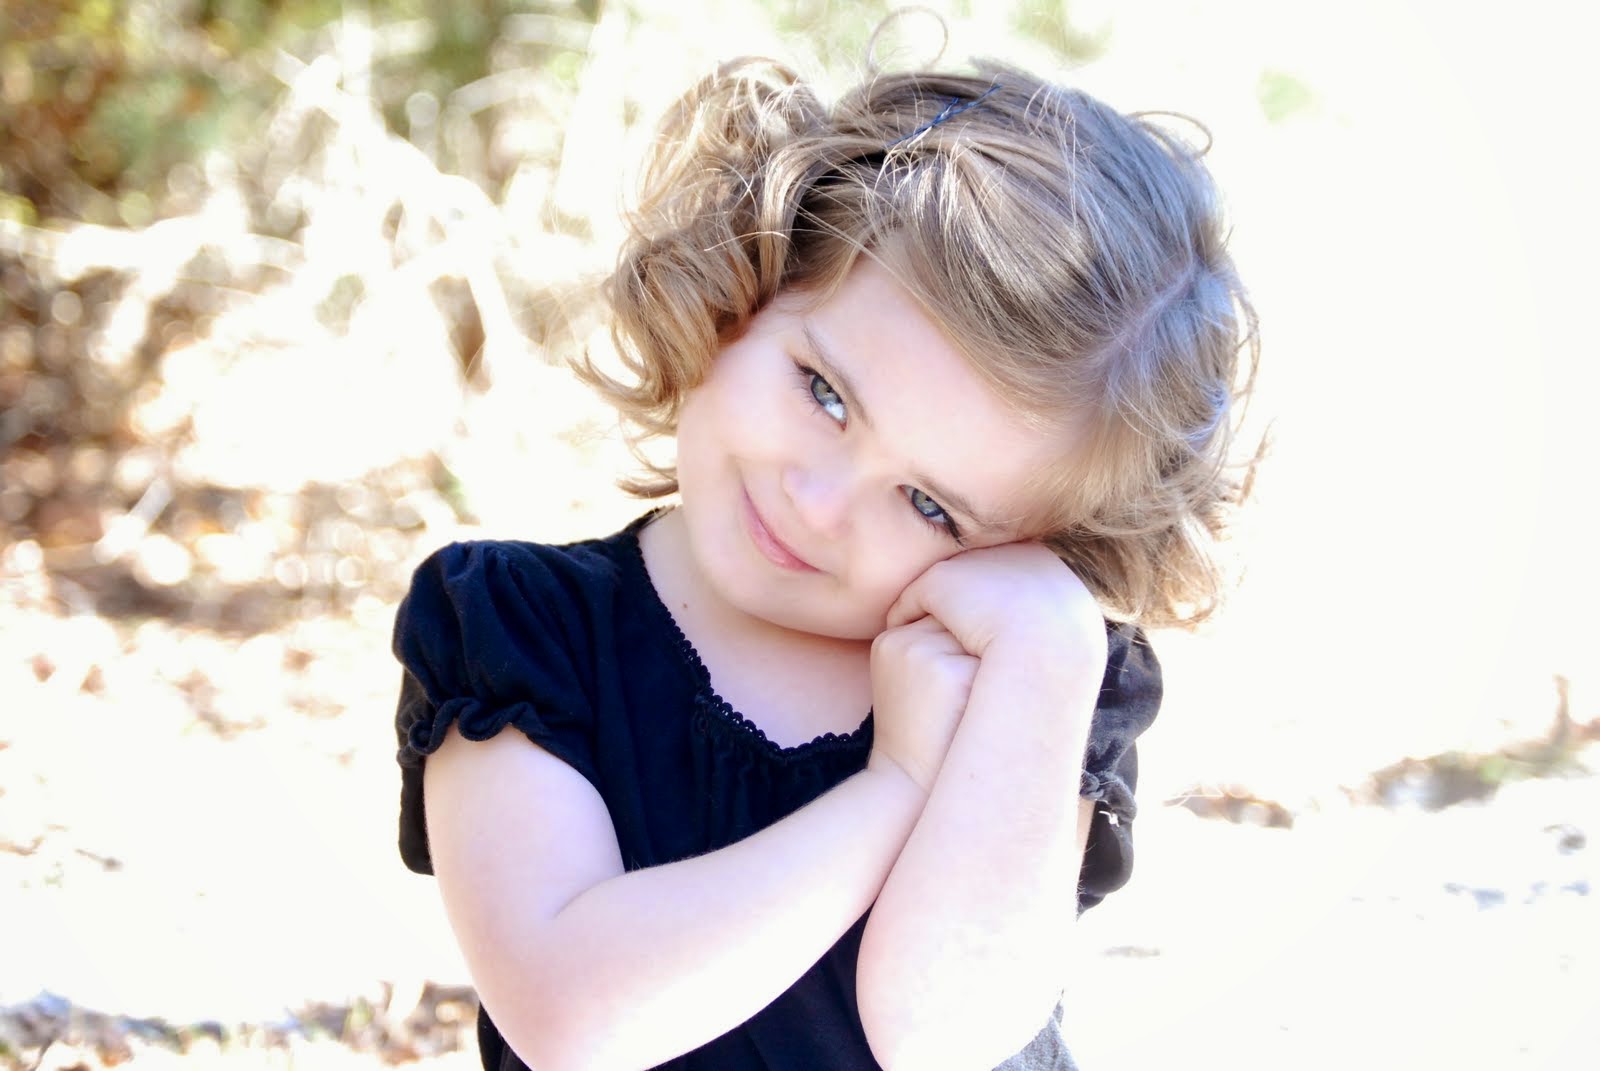 Gambar Anak Kecil Perempuan Lucu Terlengkap Distro DP BBM